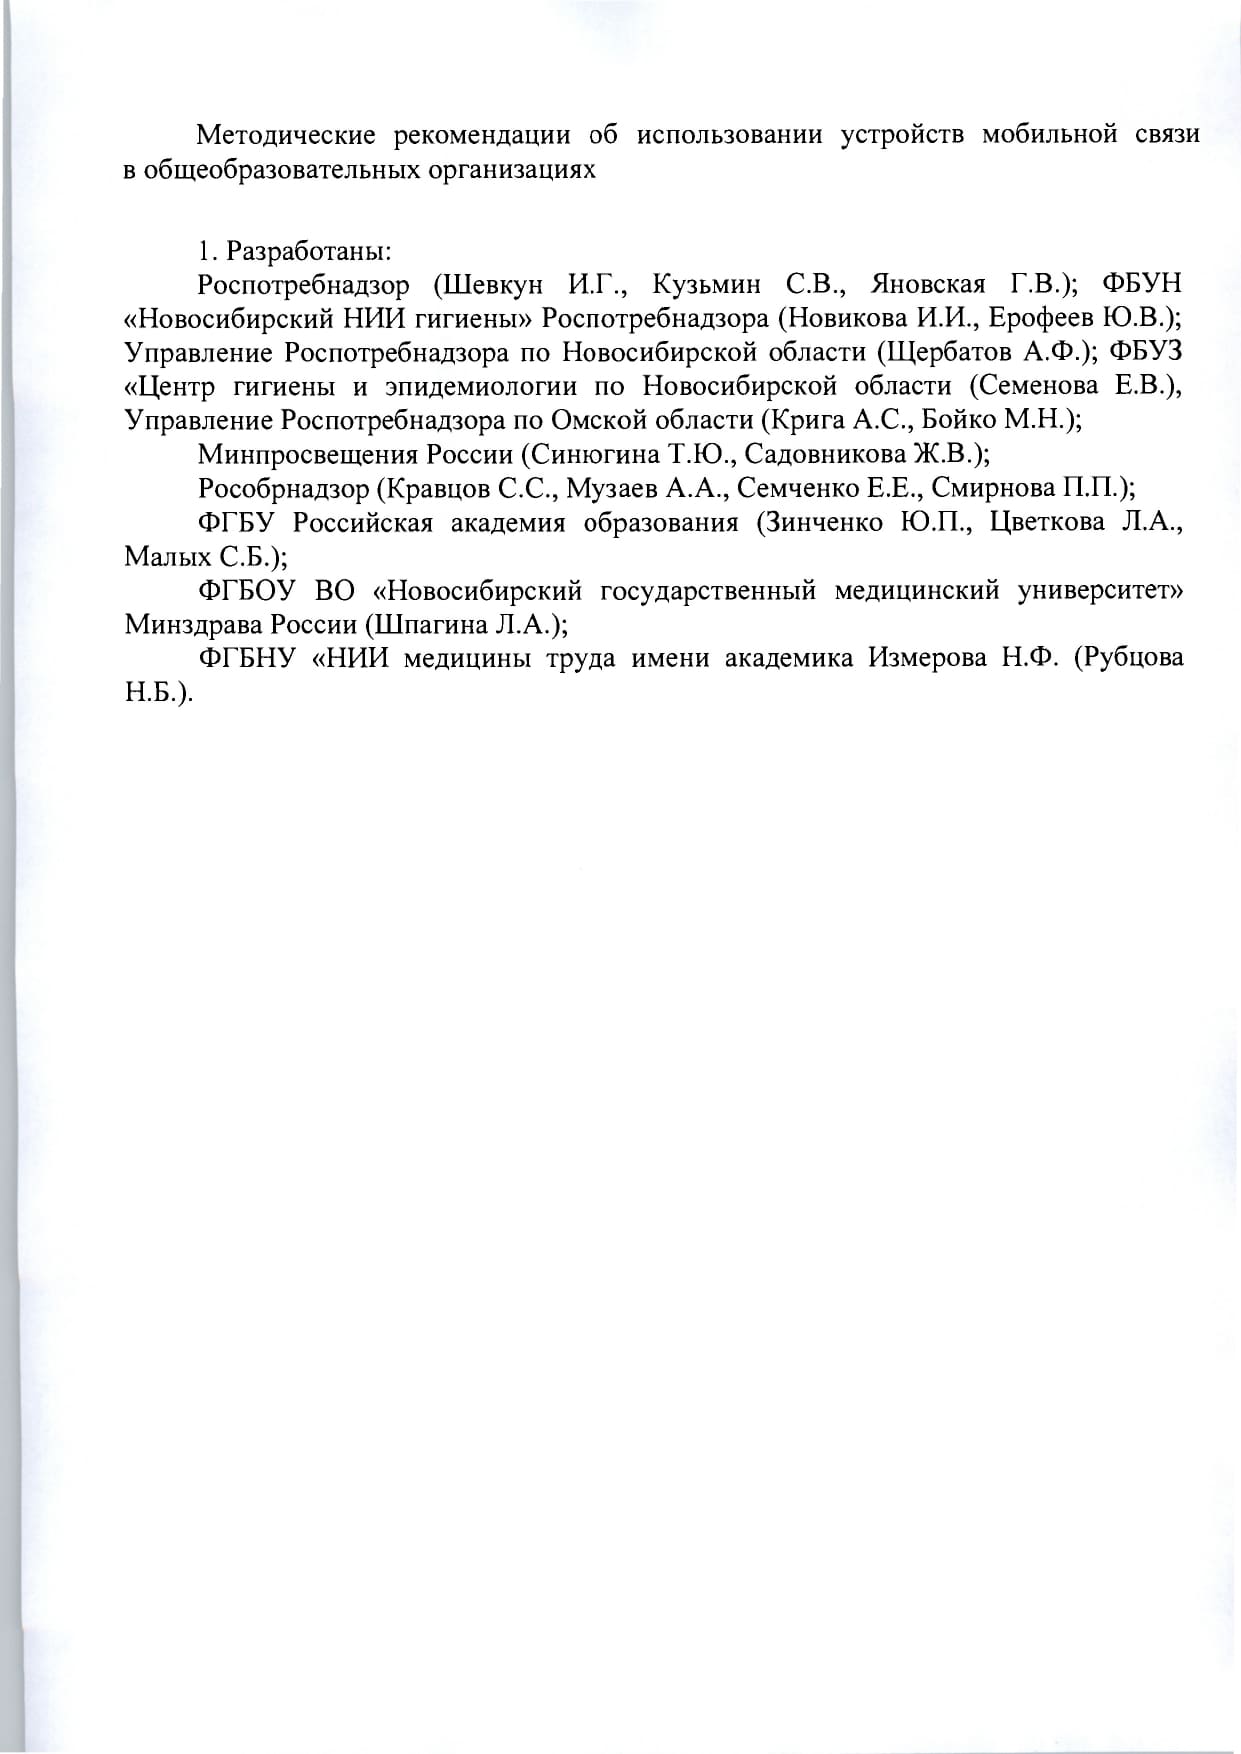 mr-telefony-v-obrazovatelnykh-org- 1  page-0002